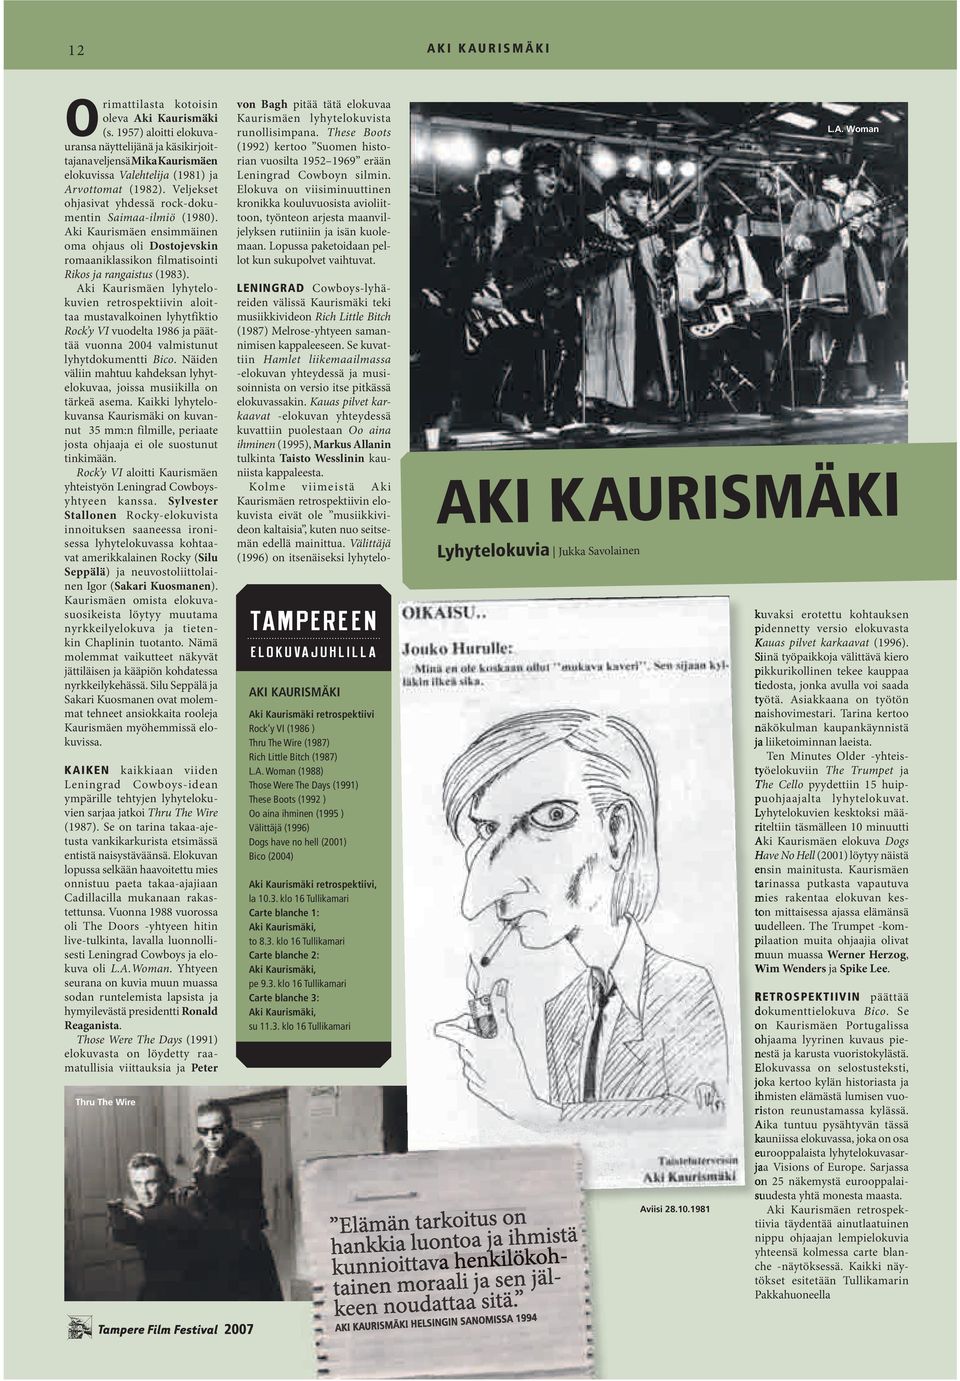 Veljekset ohjasivat yhdessä rock-dokumentin Saimaa-ilmiö (1980). Aki Kaurismäen ensimmäinen oma ohjaus oli Dostojevskin romaaniklassikon filmatisointi Rikos ja rangaistus (1983).